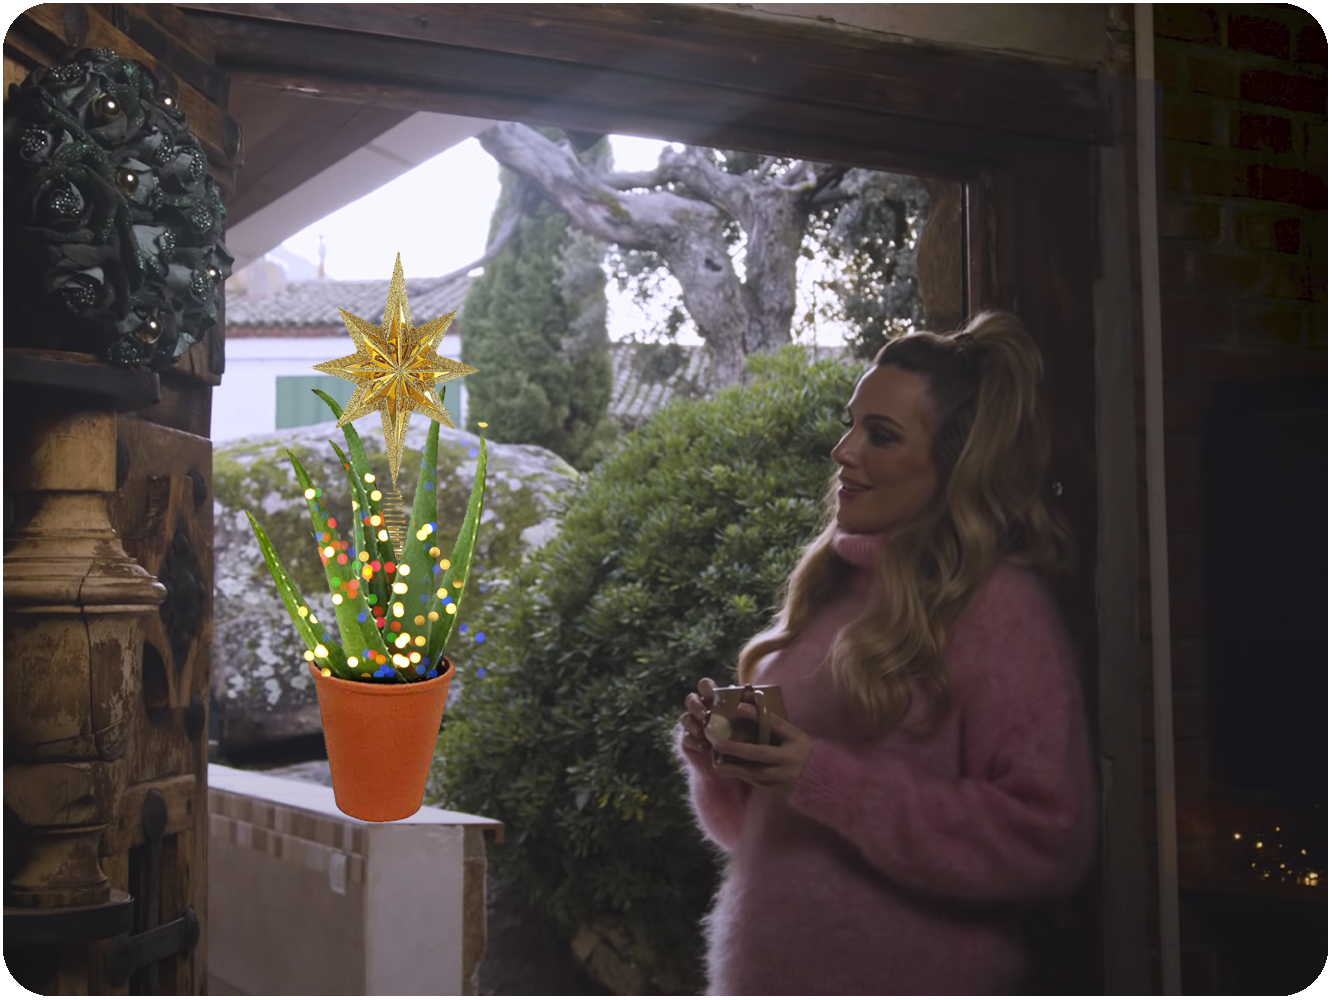  Se prevé un inusual número de árboles navideños de Aloe tras el estreno de ‘Siempre Es Navidad Junto A Ti’ de Edurne